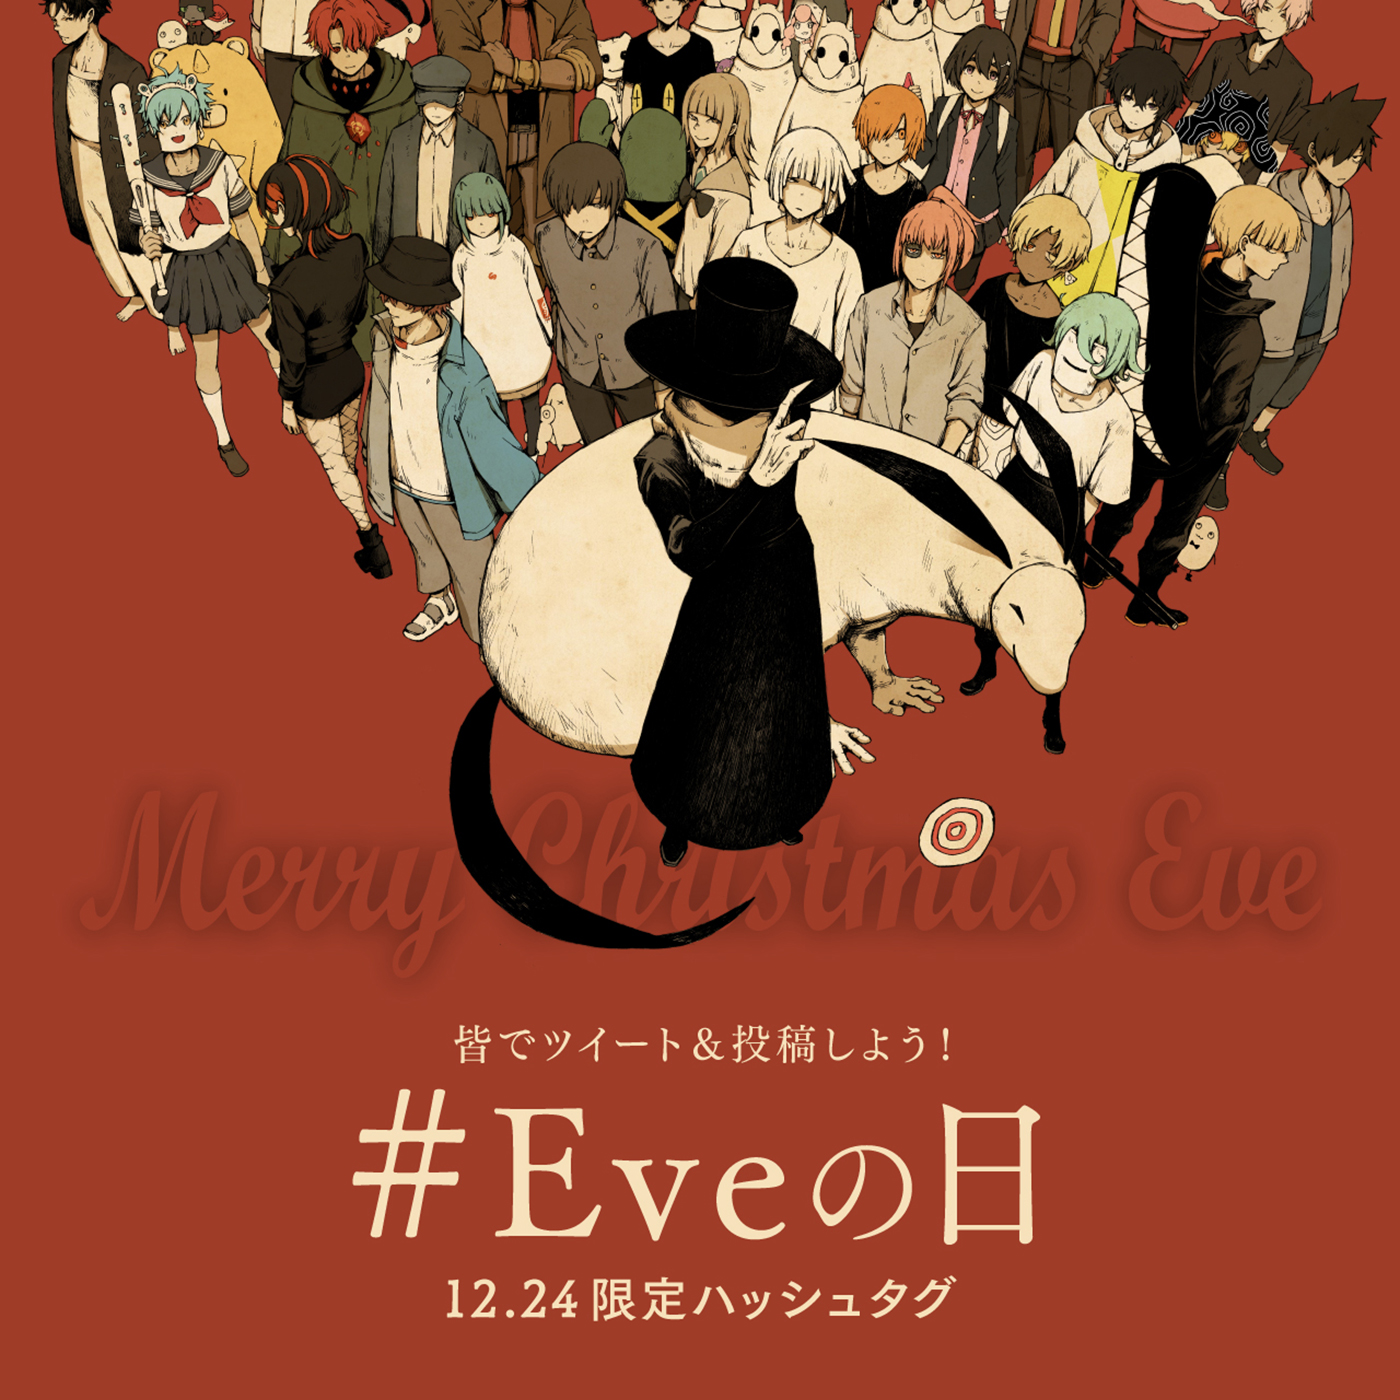 Eve、クリスマスイブに配信ライブを開催！ YouTube Premiumメンバー限定のアフターパーティーも